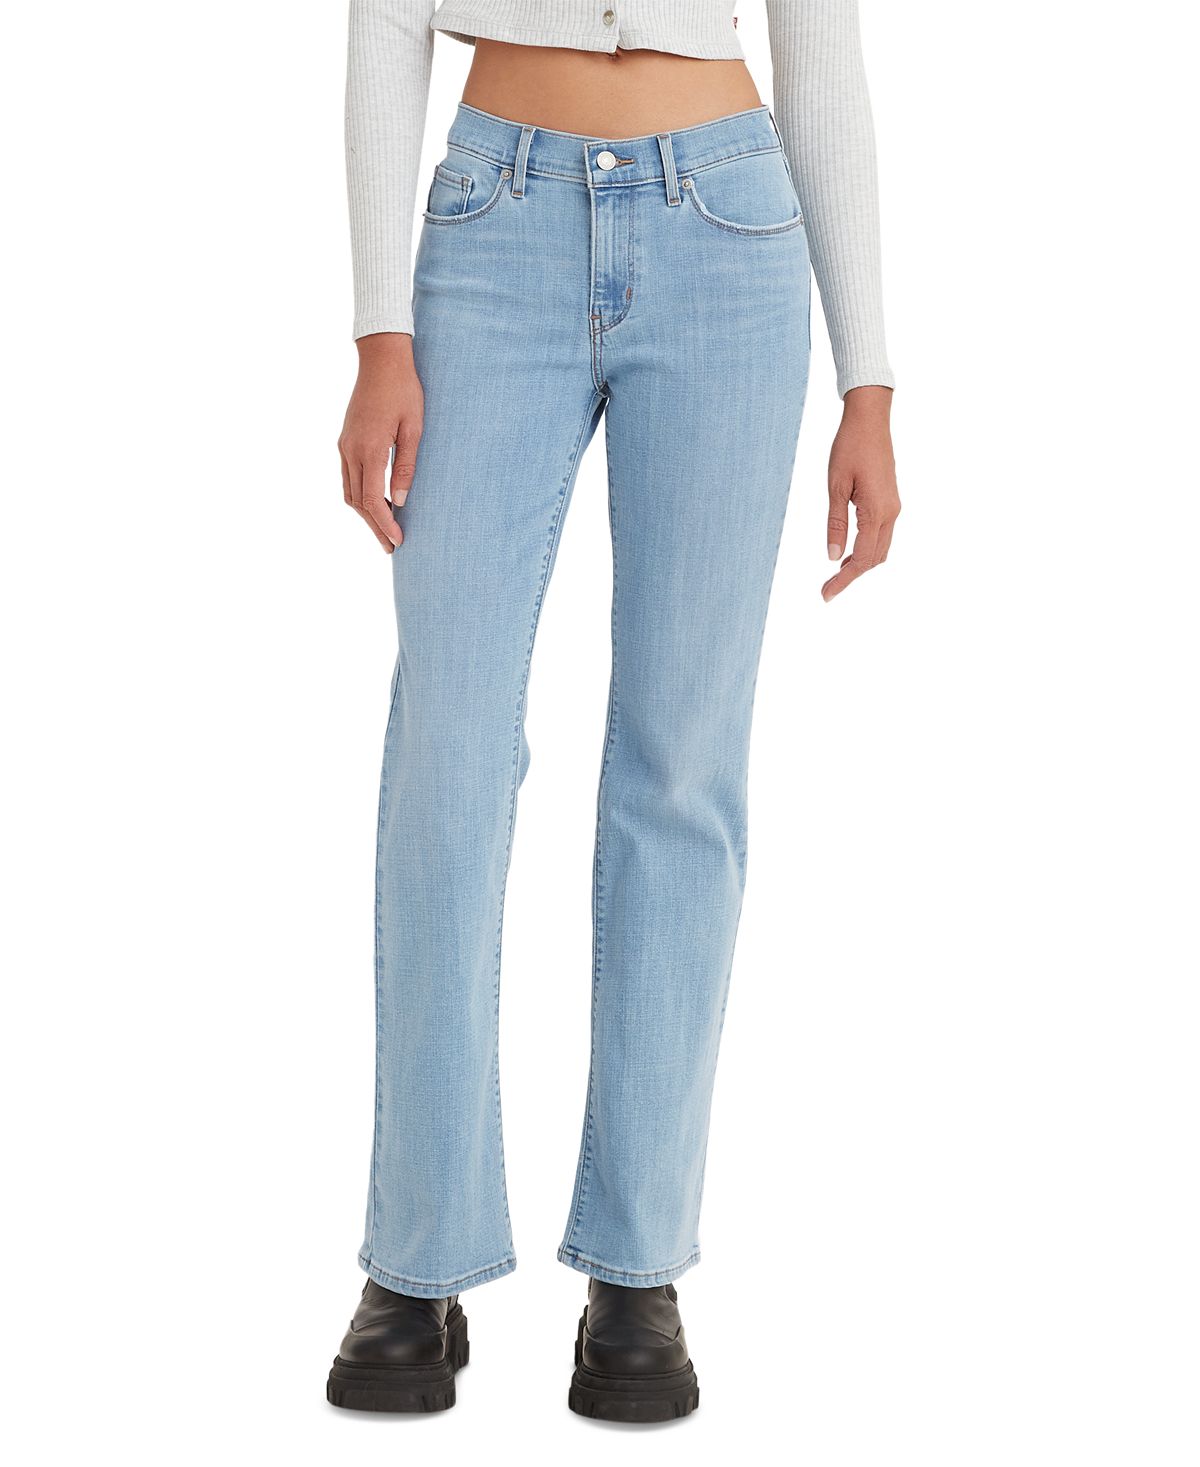 Женские повседневные классические джинсы Bootcut со средней посадкой Levi's